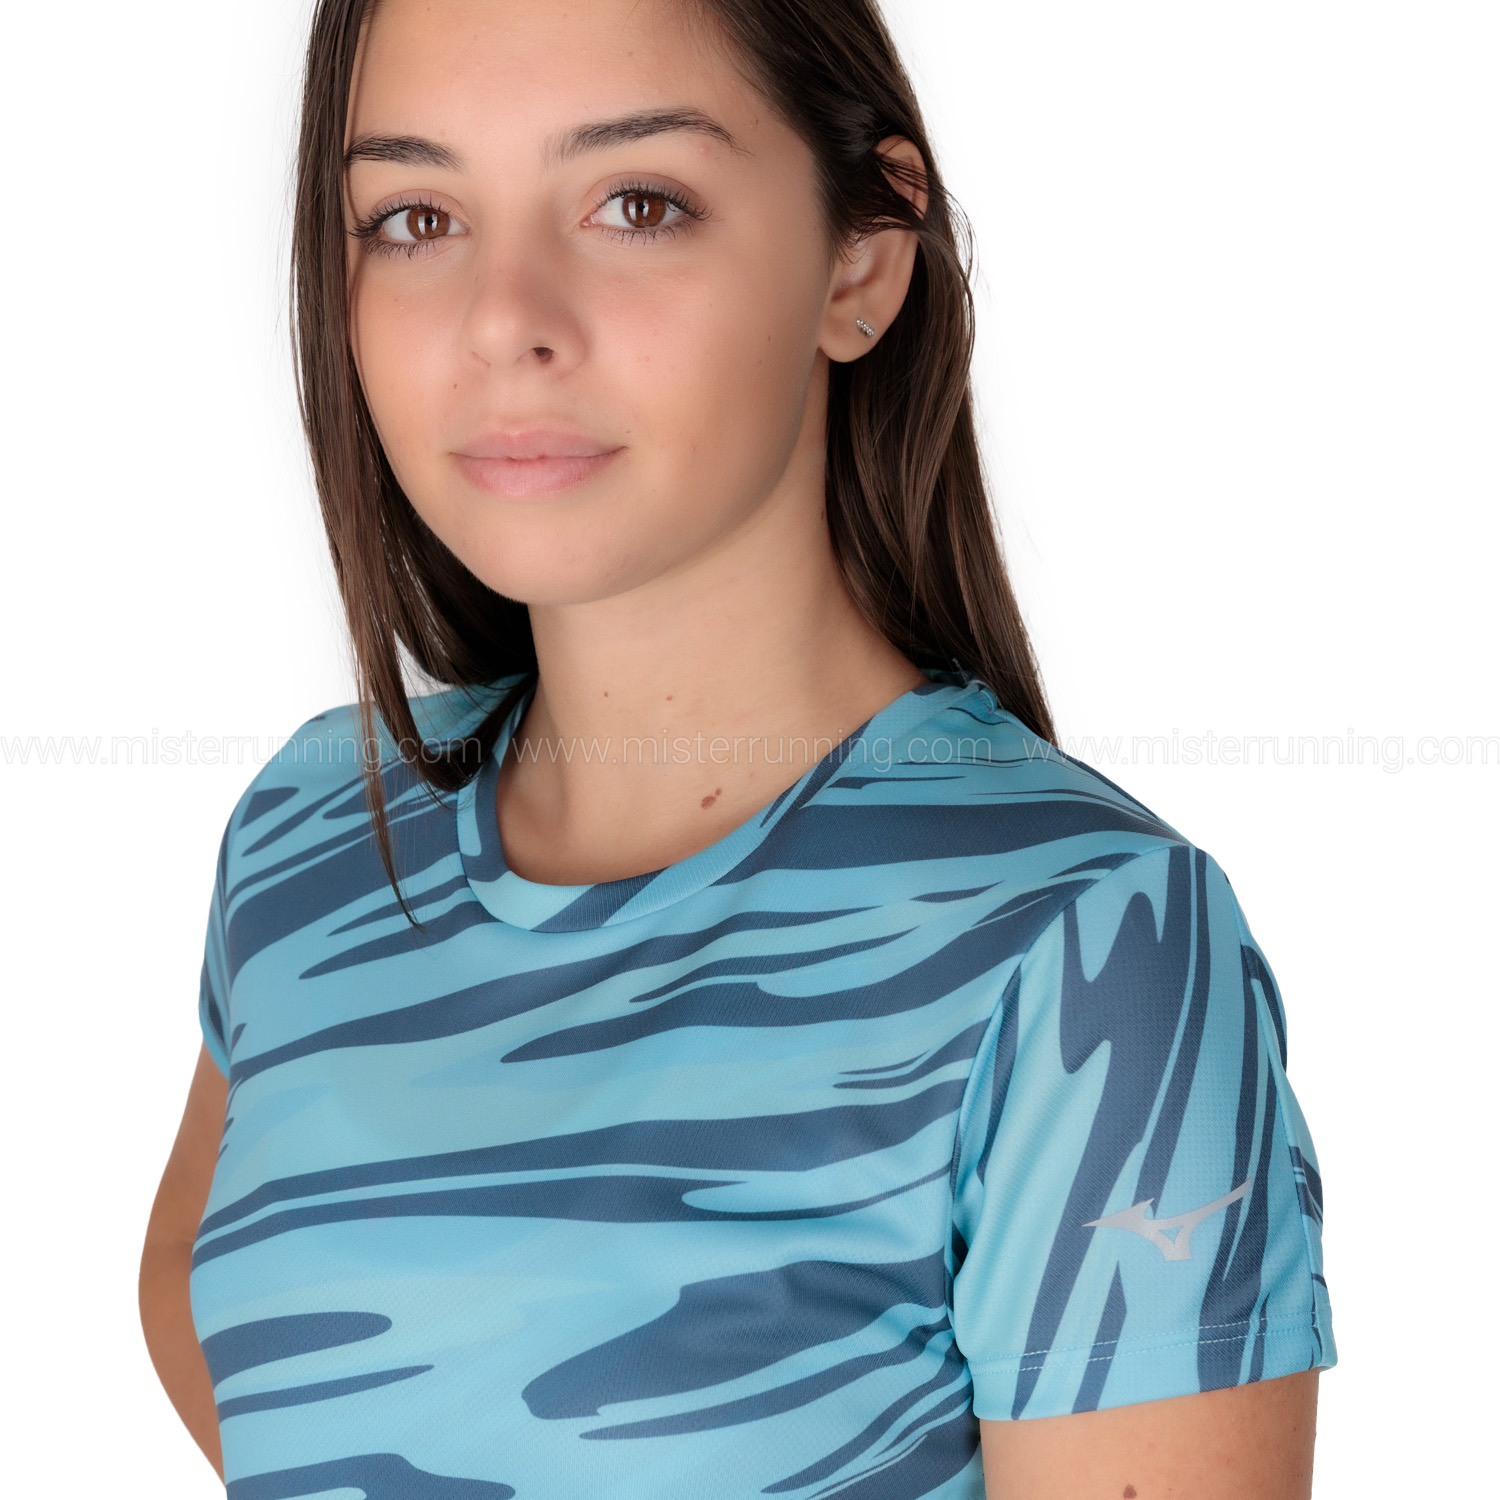 Mizuno Impulse Core Graphic Camiseta - Maui Blue